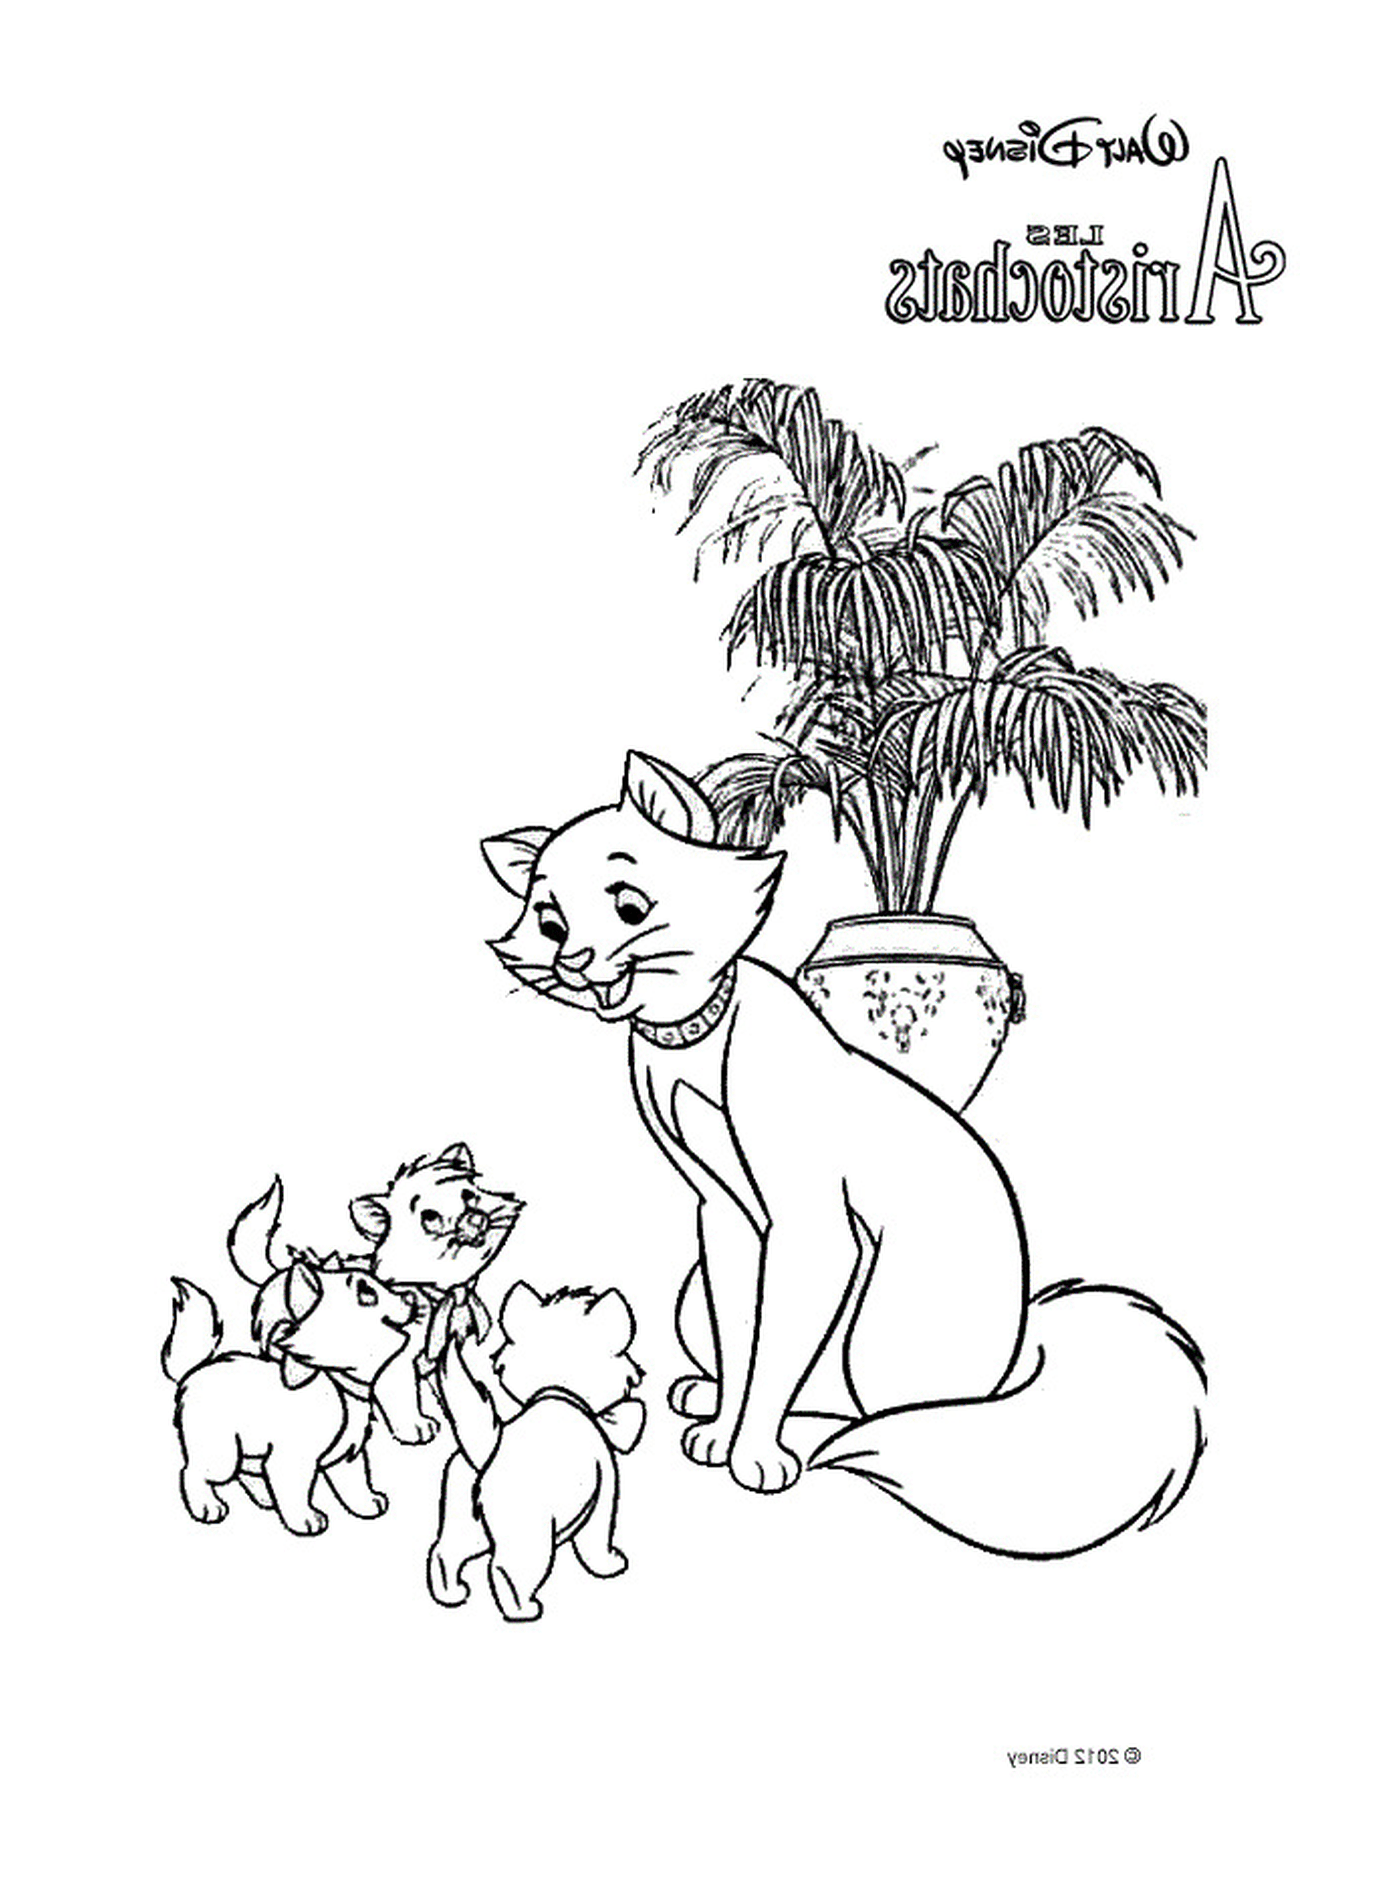  Un gatto adulto e due piccoli gattini davanti ad una palma in vaso 